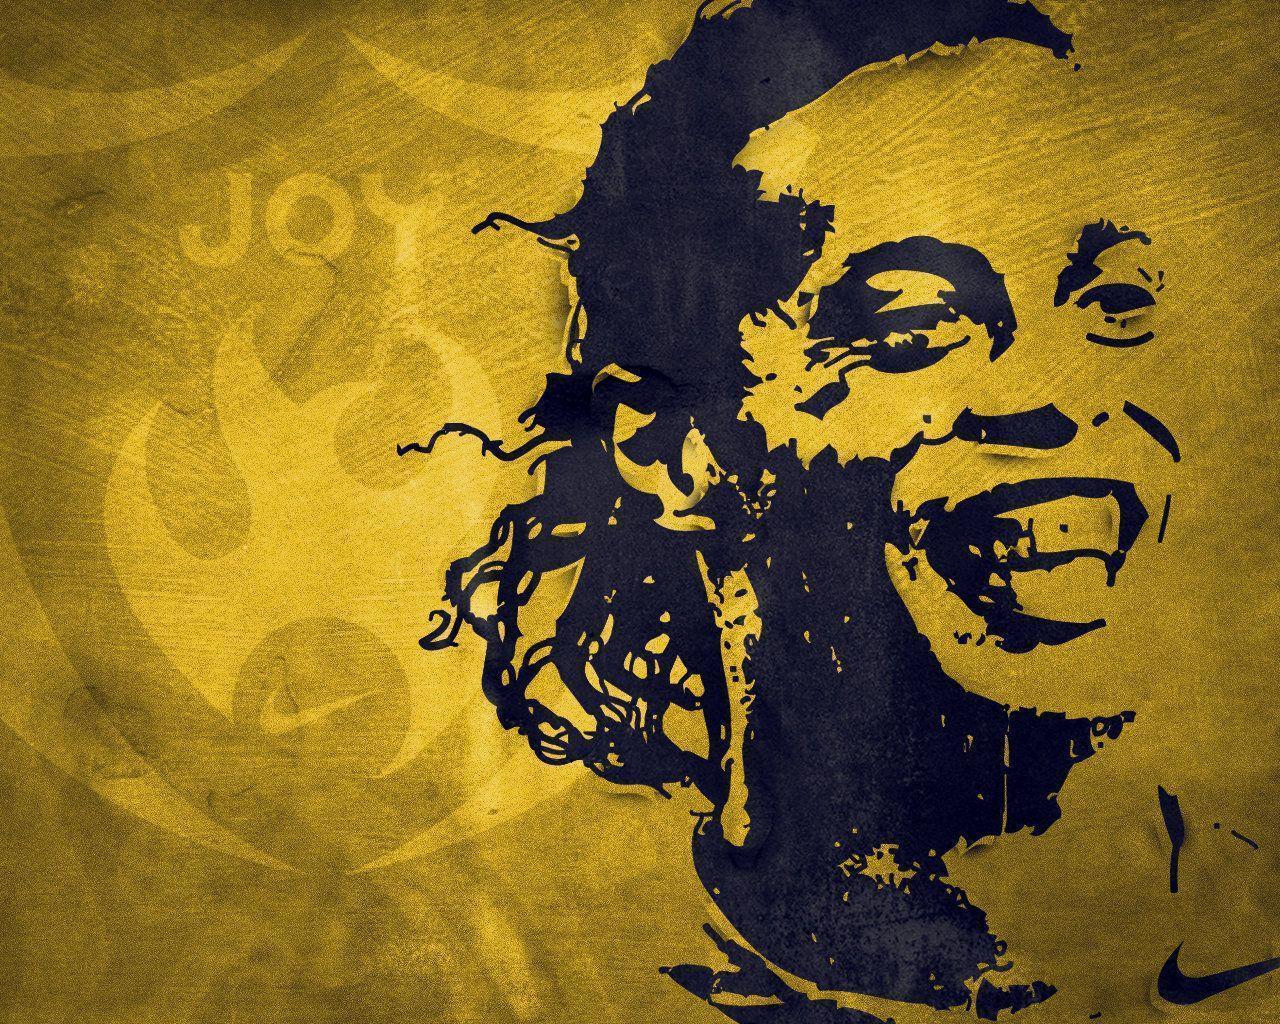 Ronaldinho Art Wallpaper. Proyectos que intentar